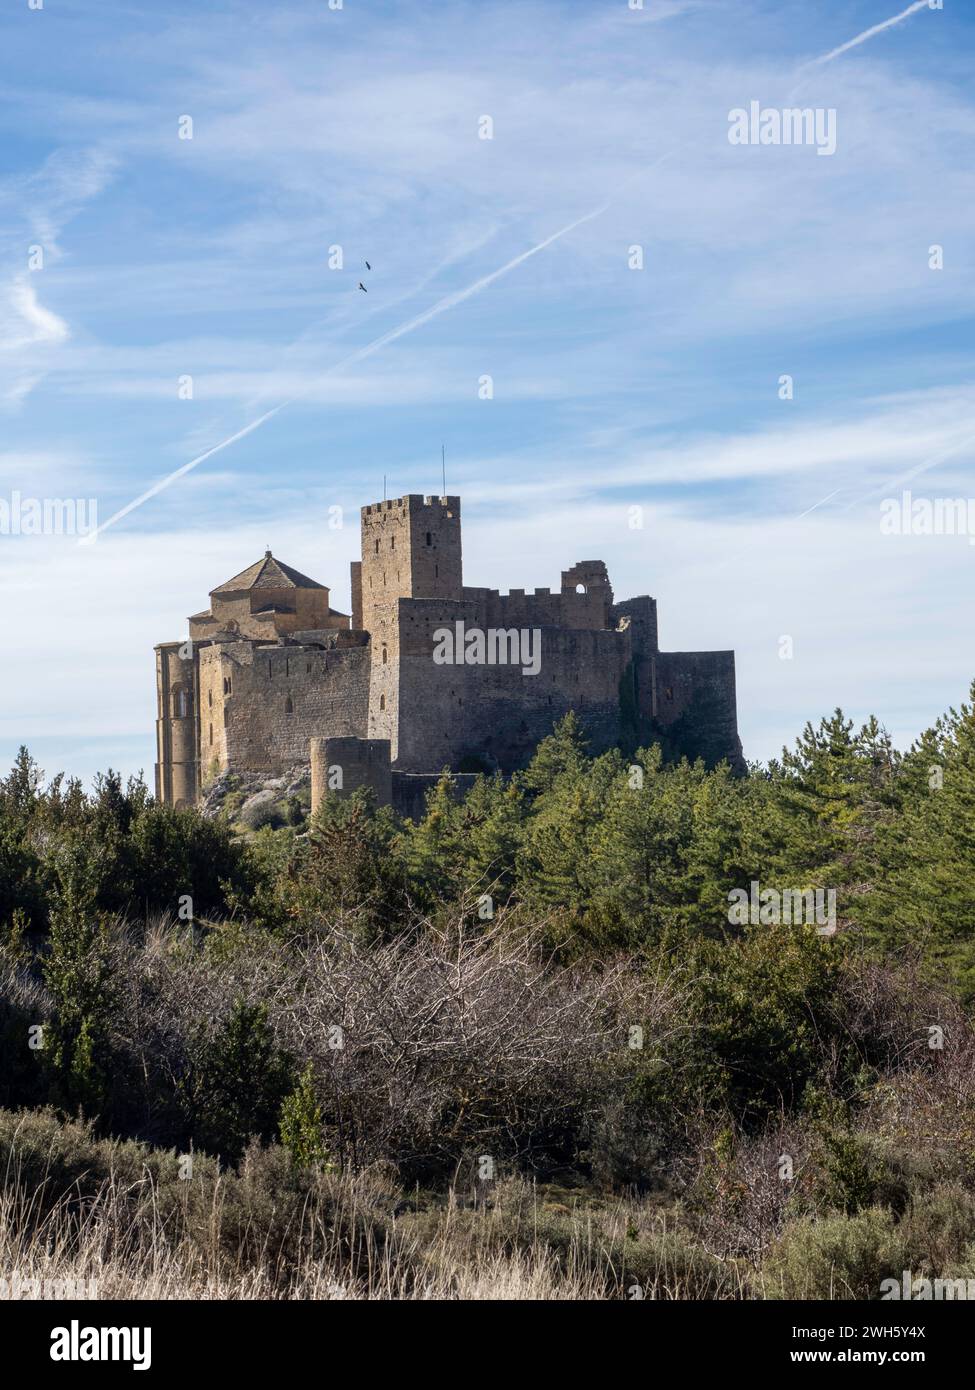 Château de Loarre romane médiévale fortification défensive romane Huesca Aragon Espagne L'un des châteaux médiévaux les mieux conservés d'Espagne Banque D'Images